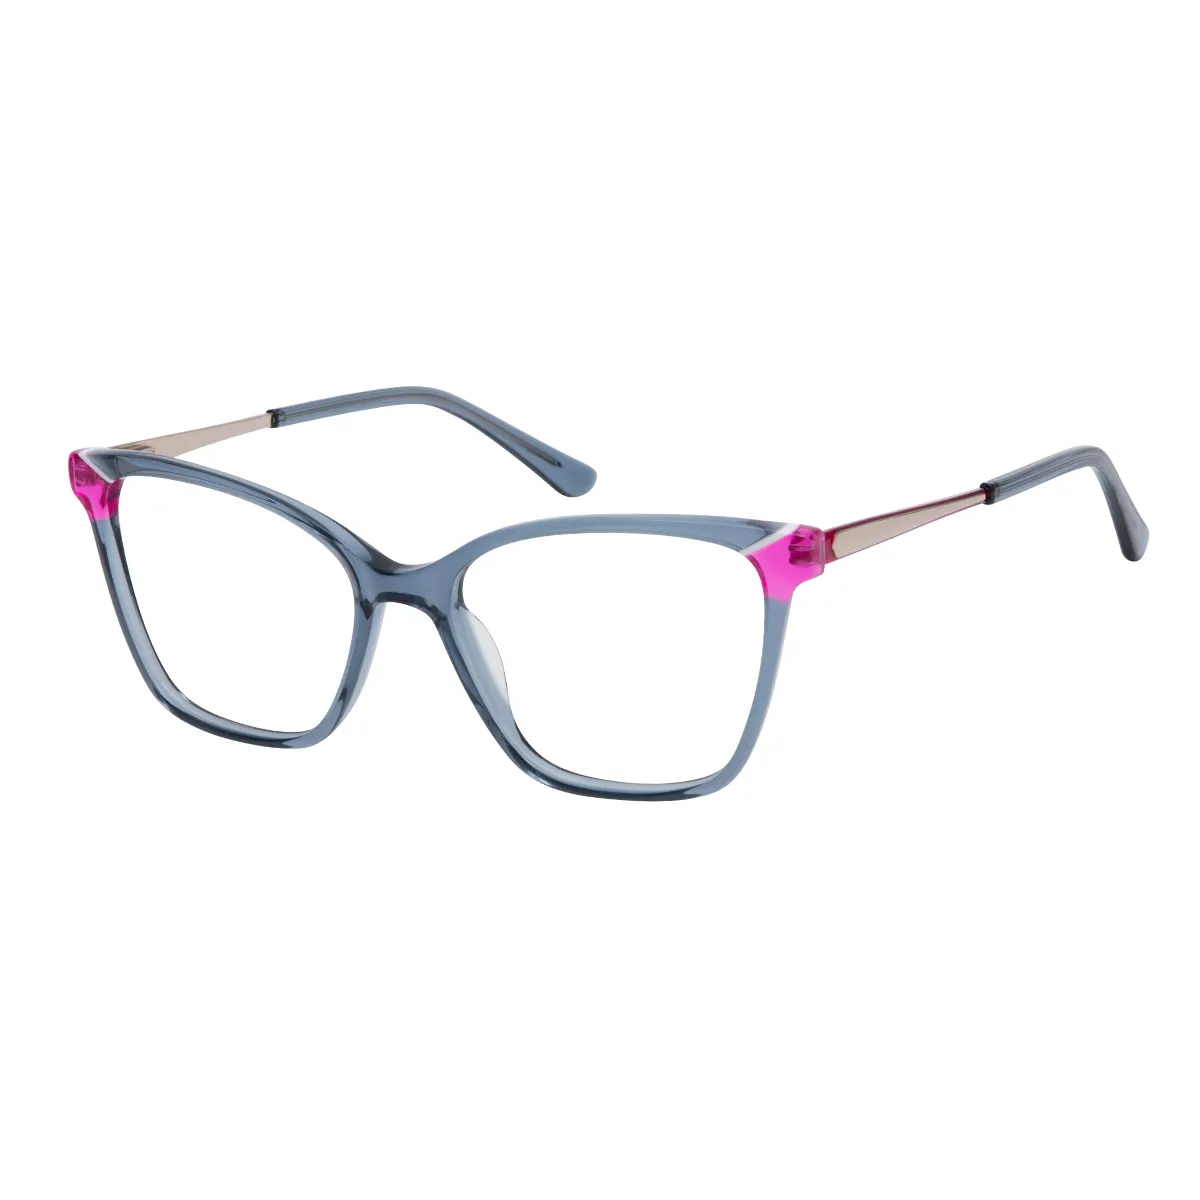 Mylene - Square Blue Glasses for Women